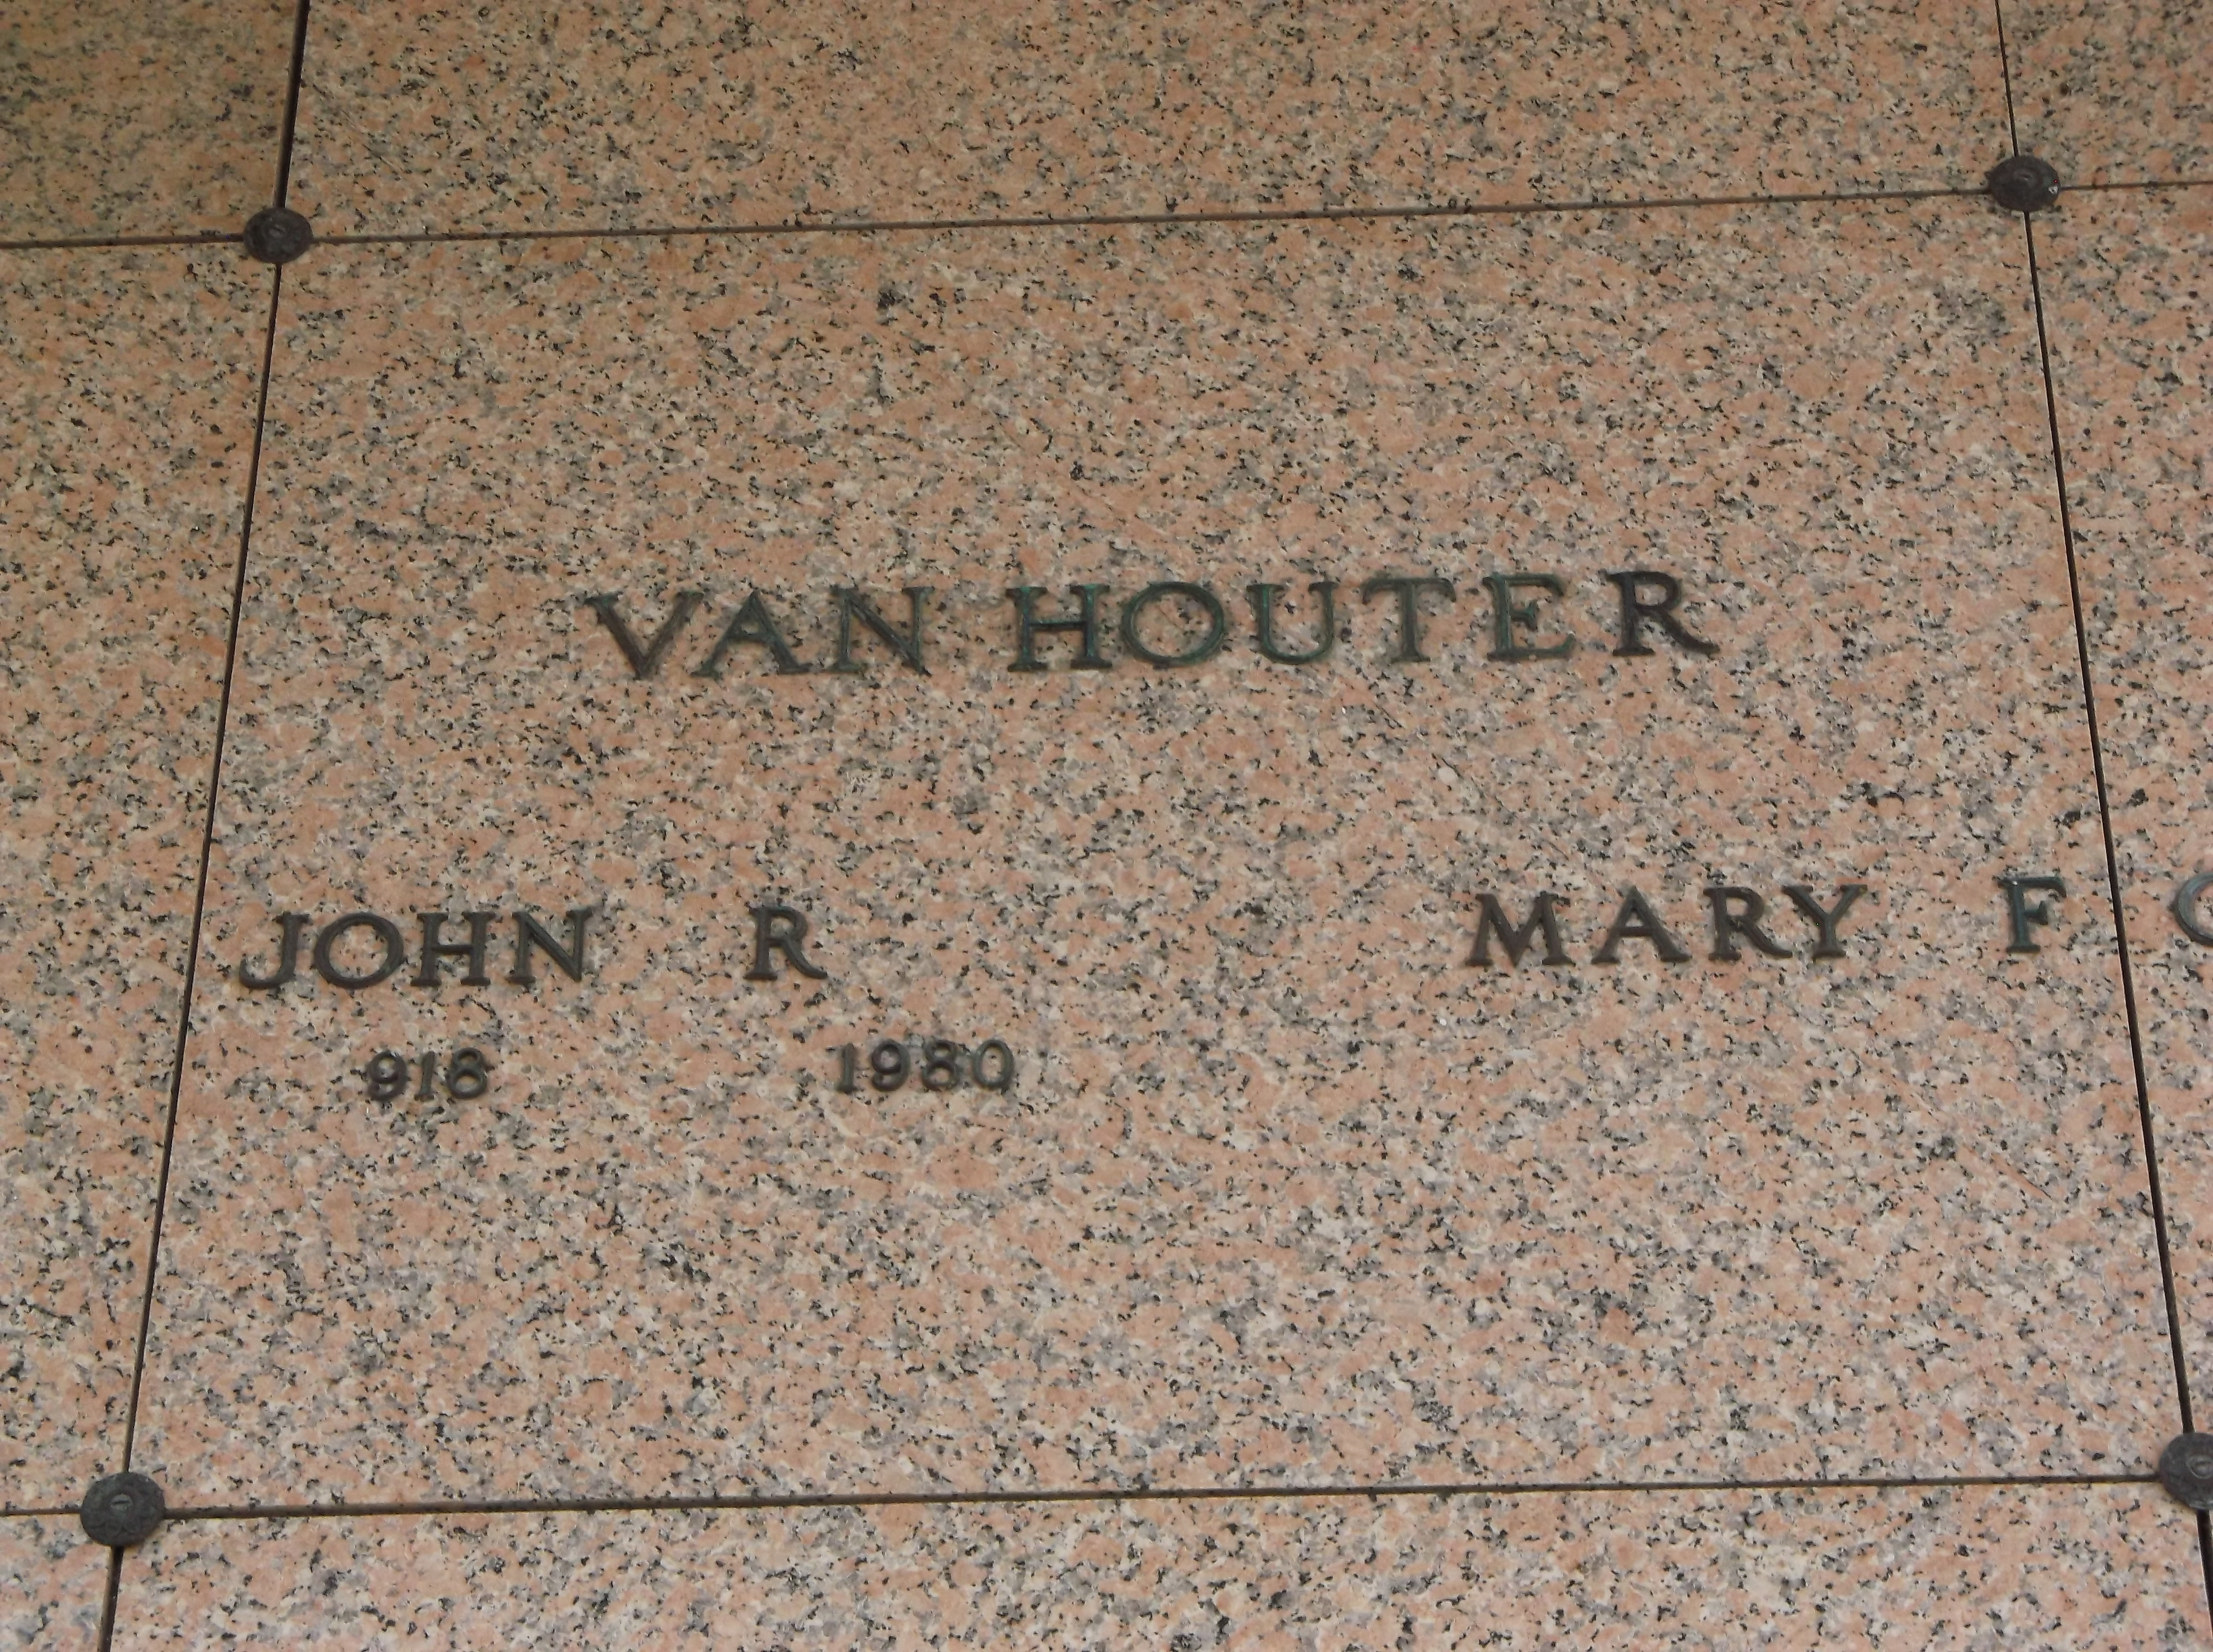 John R Van Houter